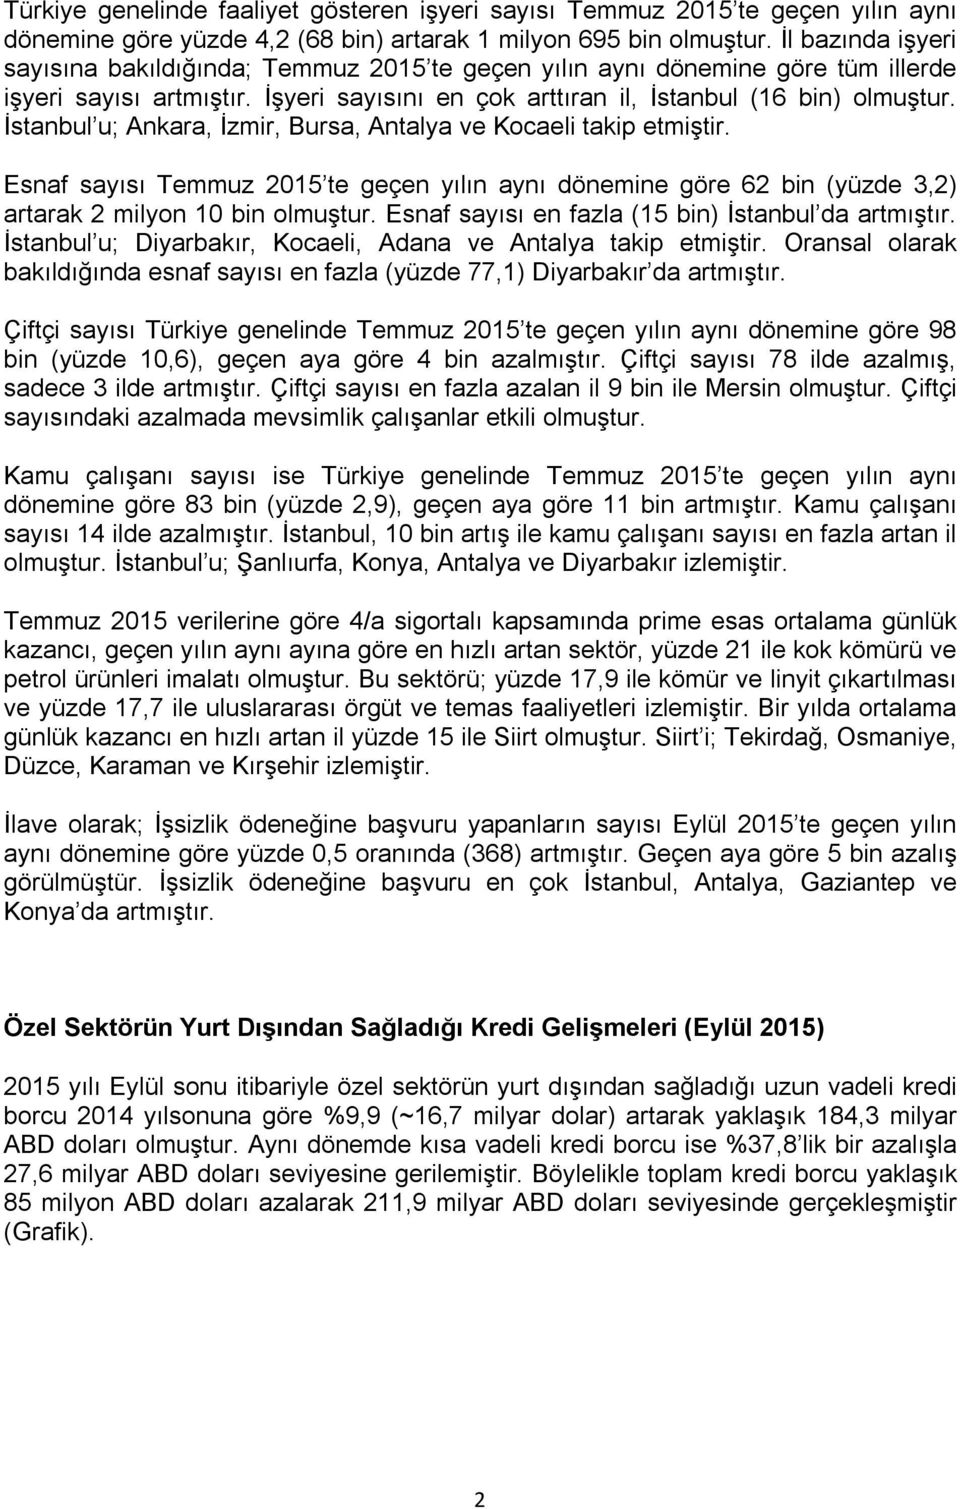 İstanbul u; Ankara, İzmir, Bursa, Antalya ve Kocaeli takip etmiştir. Esnaf sayısı Temmuz 2015 te geçen yılın aynı dönemine göre 62 bin (yüzde 3,2) artarak 2 milyon 10 bin olmuştur.